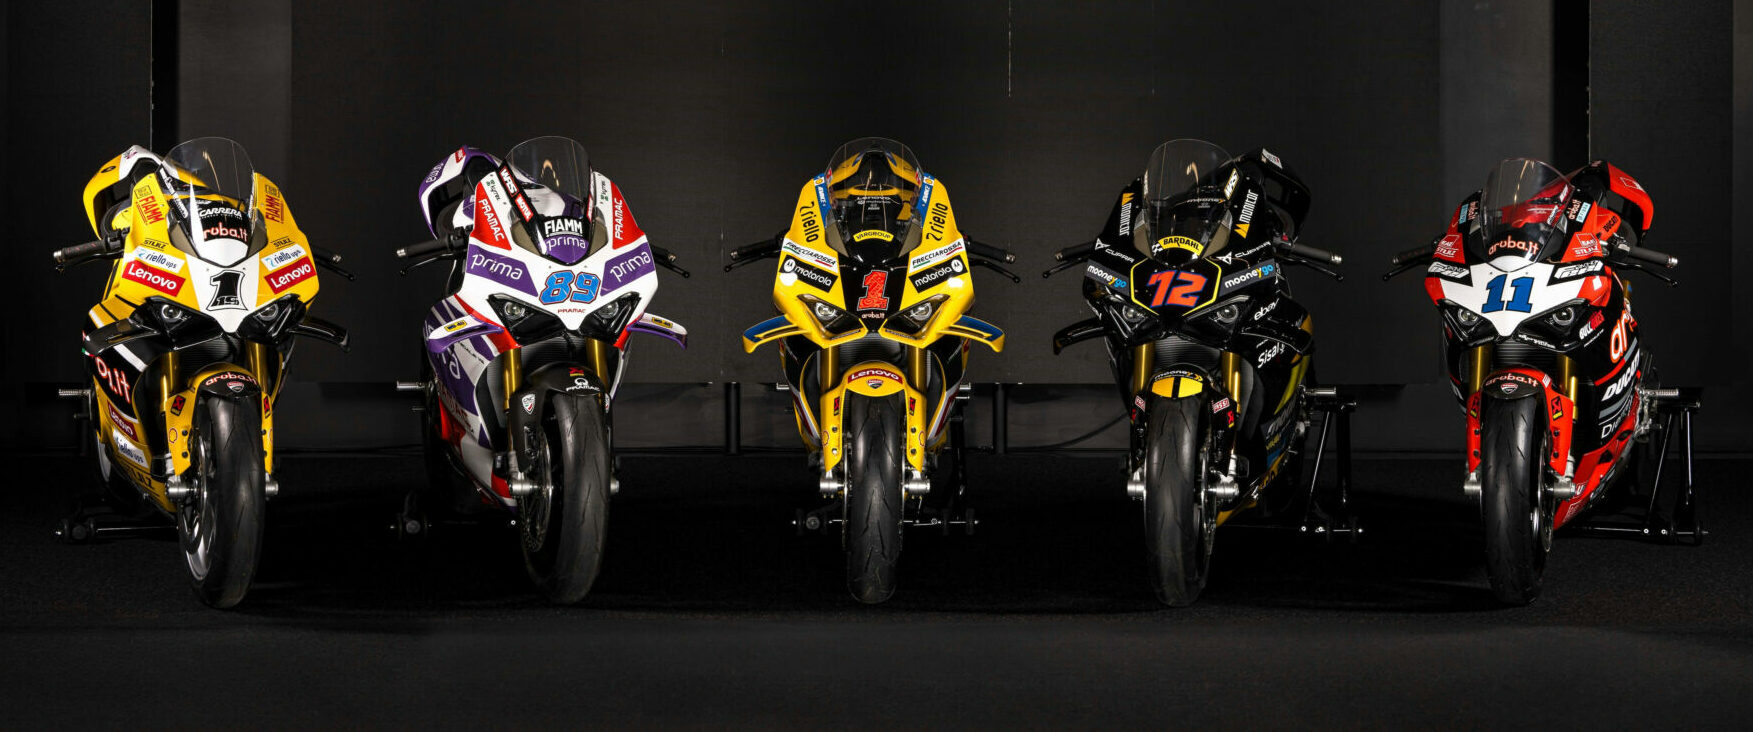 The five Ducati Panigale racer replica editions. Photo courtesy Ducati.